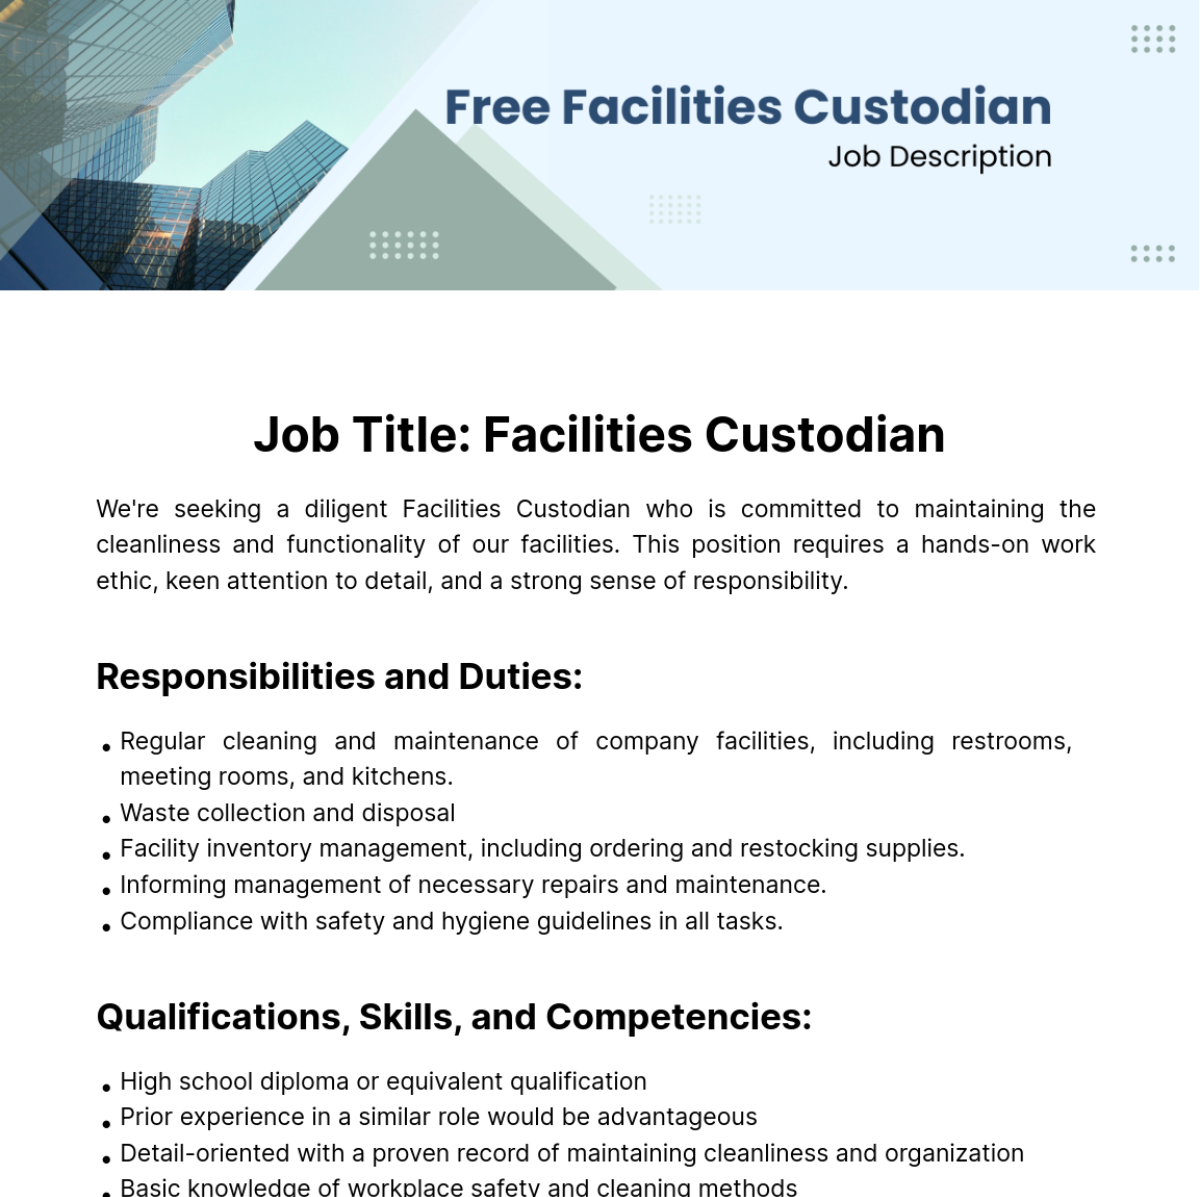 Free Facilities Custodian Job Description Template